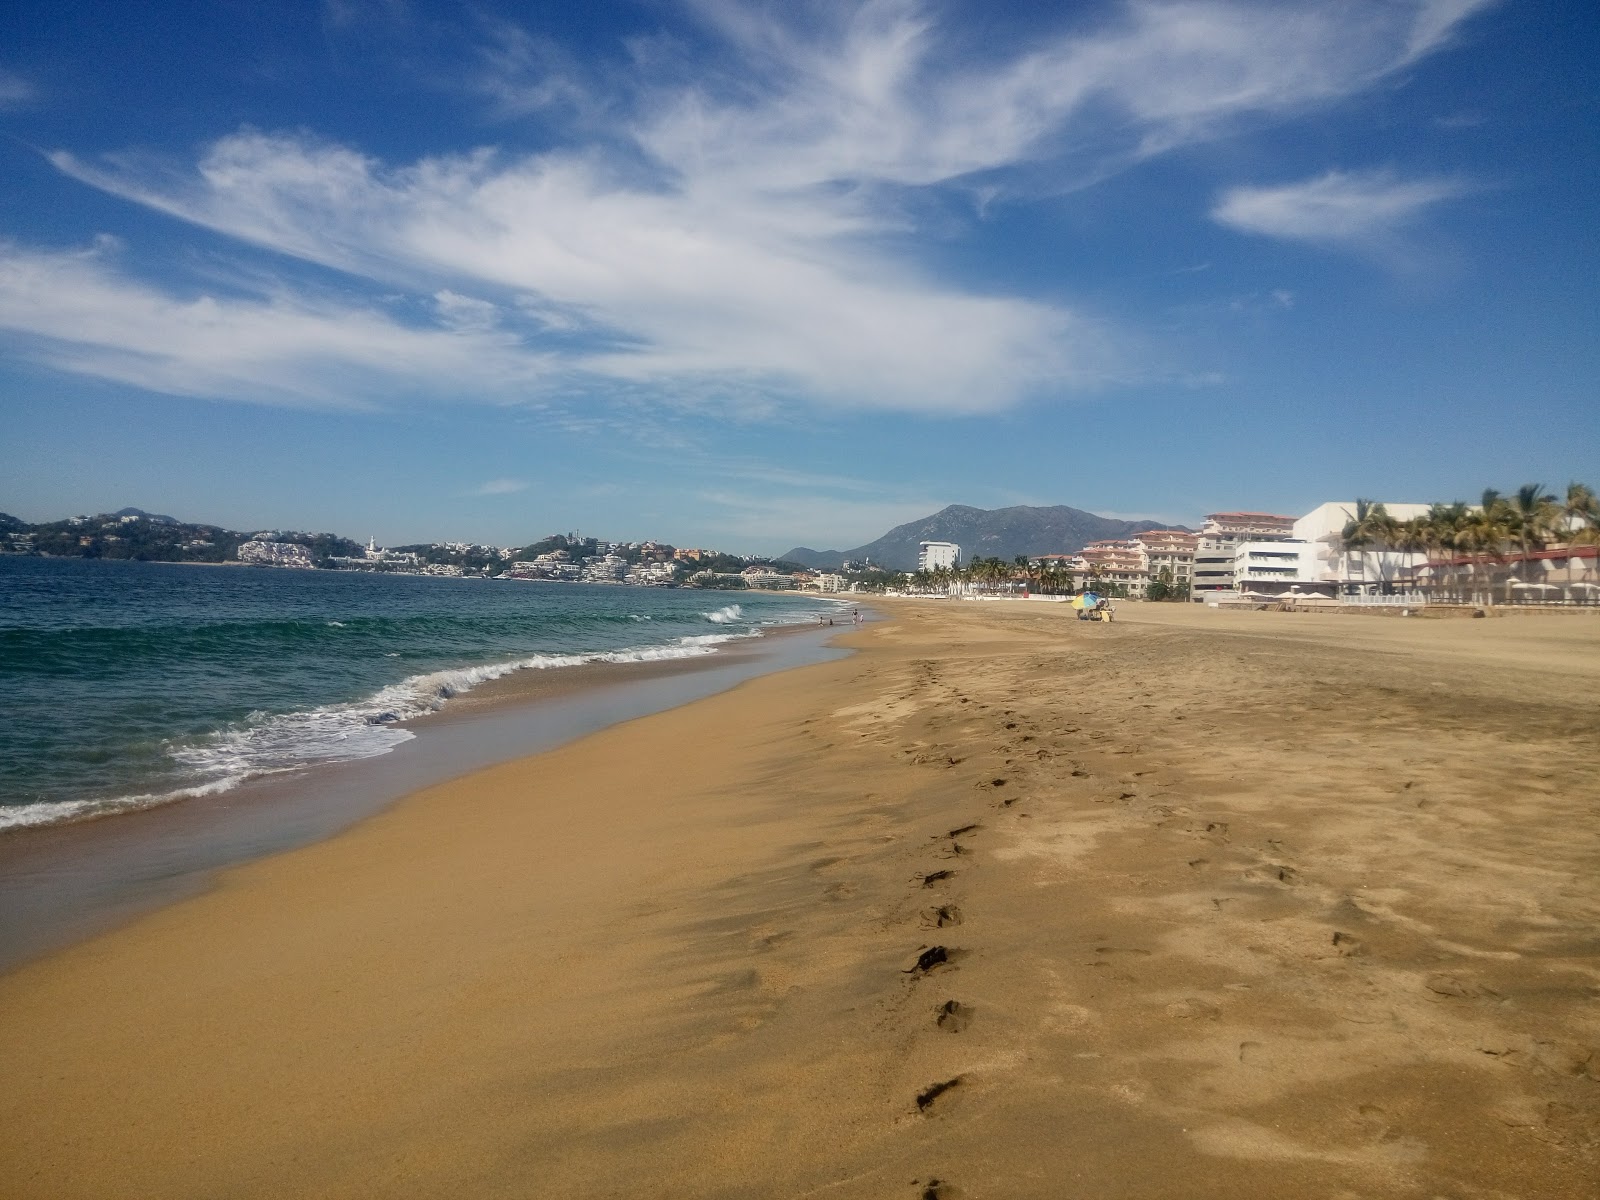 Fotografie cu Playa Olas Altas cu o suprafață de nisip maro fin